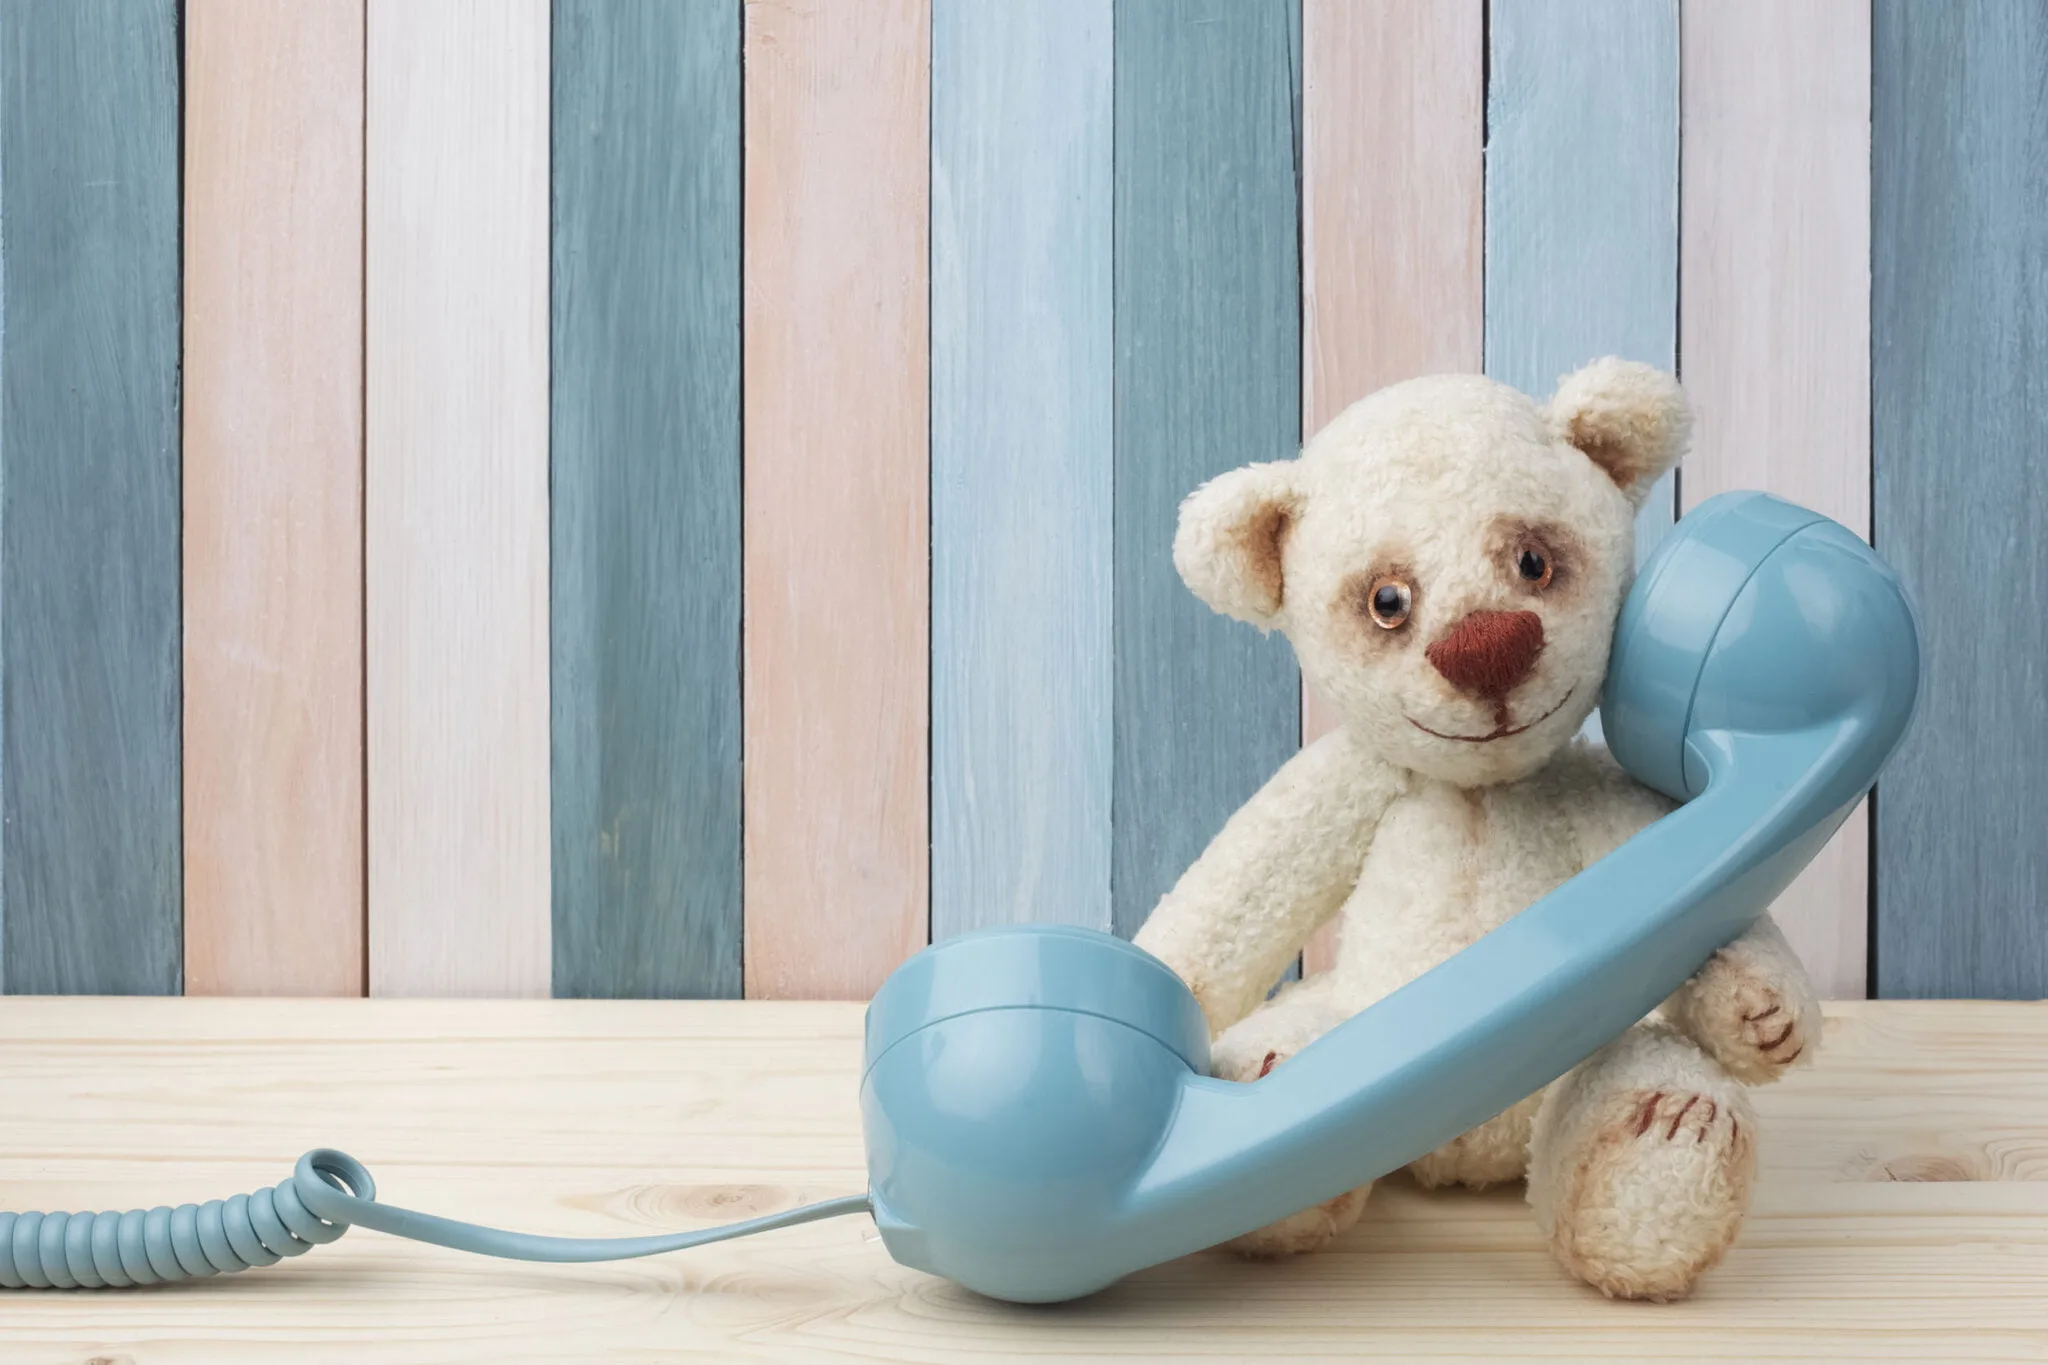 Hulplijnen voor kinderen; telefonische hulplijnen zoals de kindertelefoon tot specifieke doelgroepen via website en chatprogramma's. - Mamaliefde.nl